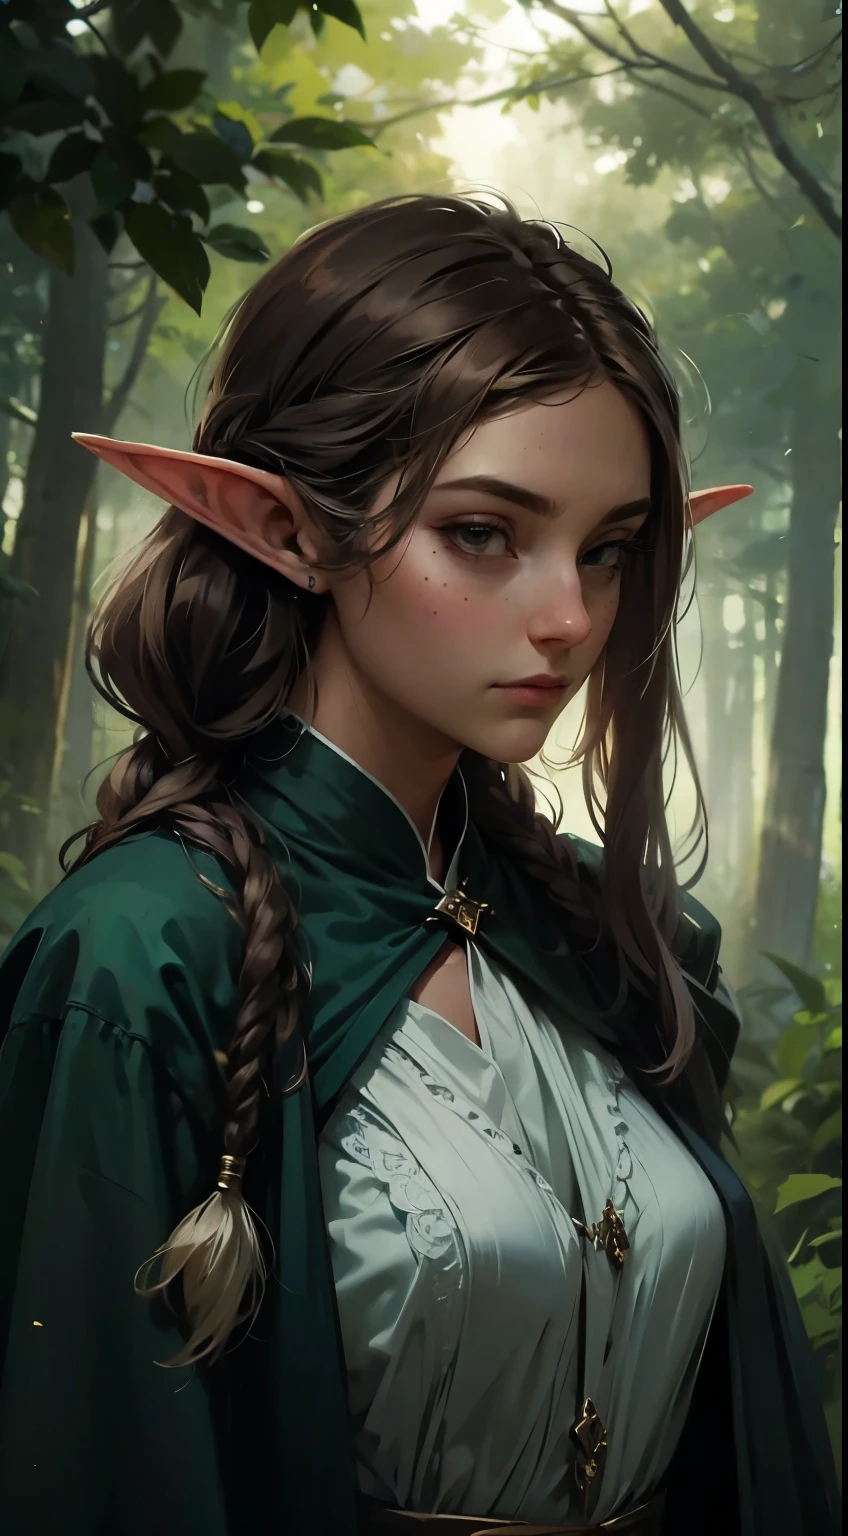 женщина-эльф, длинные черные волосы, Плетеные волосы, Брюнетка, круглое лицо, зелено-белая одежда, в лесу, фантастический персонаж